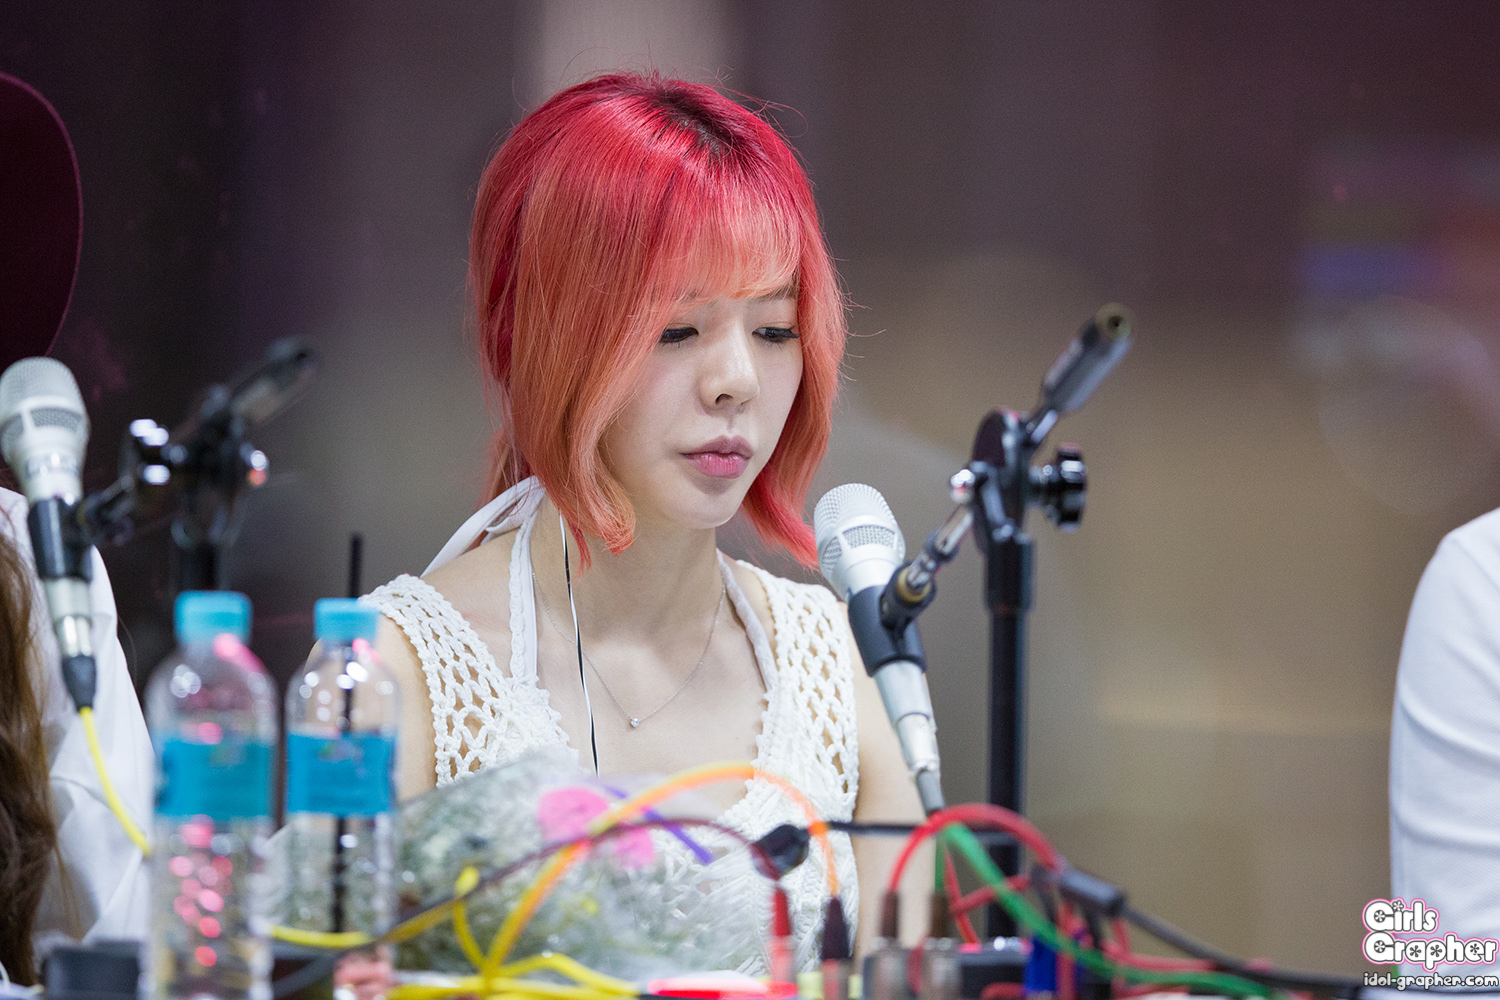 [OTHER][06-02-2015]Hình ảnh mới nhất từ DJ Sunny tại Radio MBC FM4U - "FM Date" - Page 21 2424D13855A792F41EF2AC